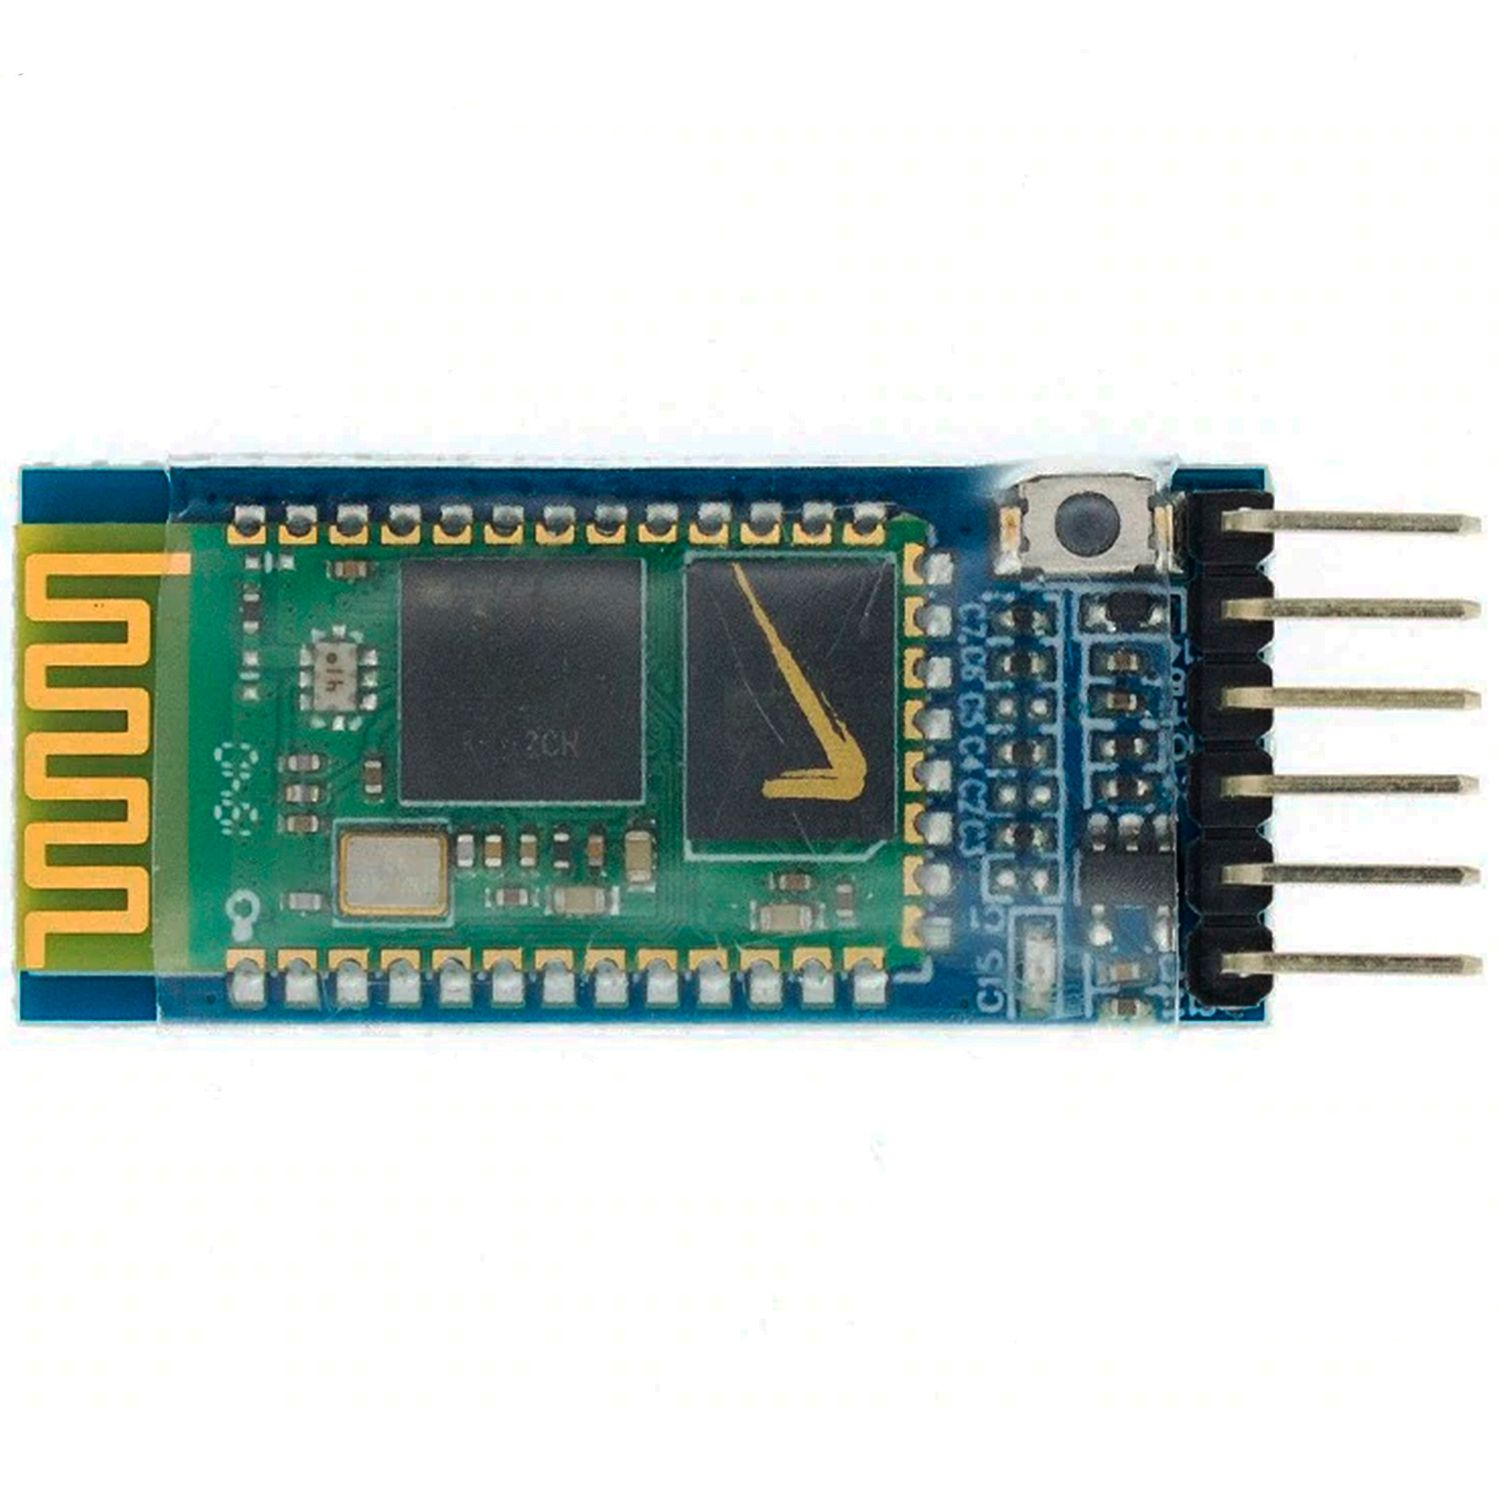 Основное фото Модуль Bluetooth HC-05 в интернет - магазине RoboStore Arduino